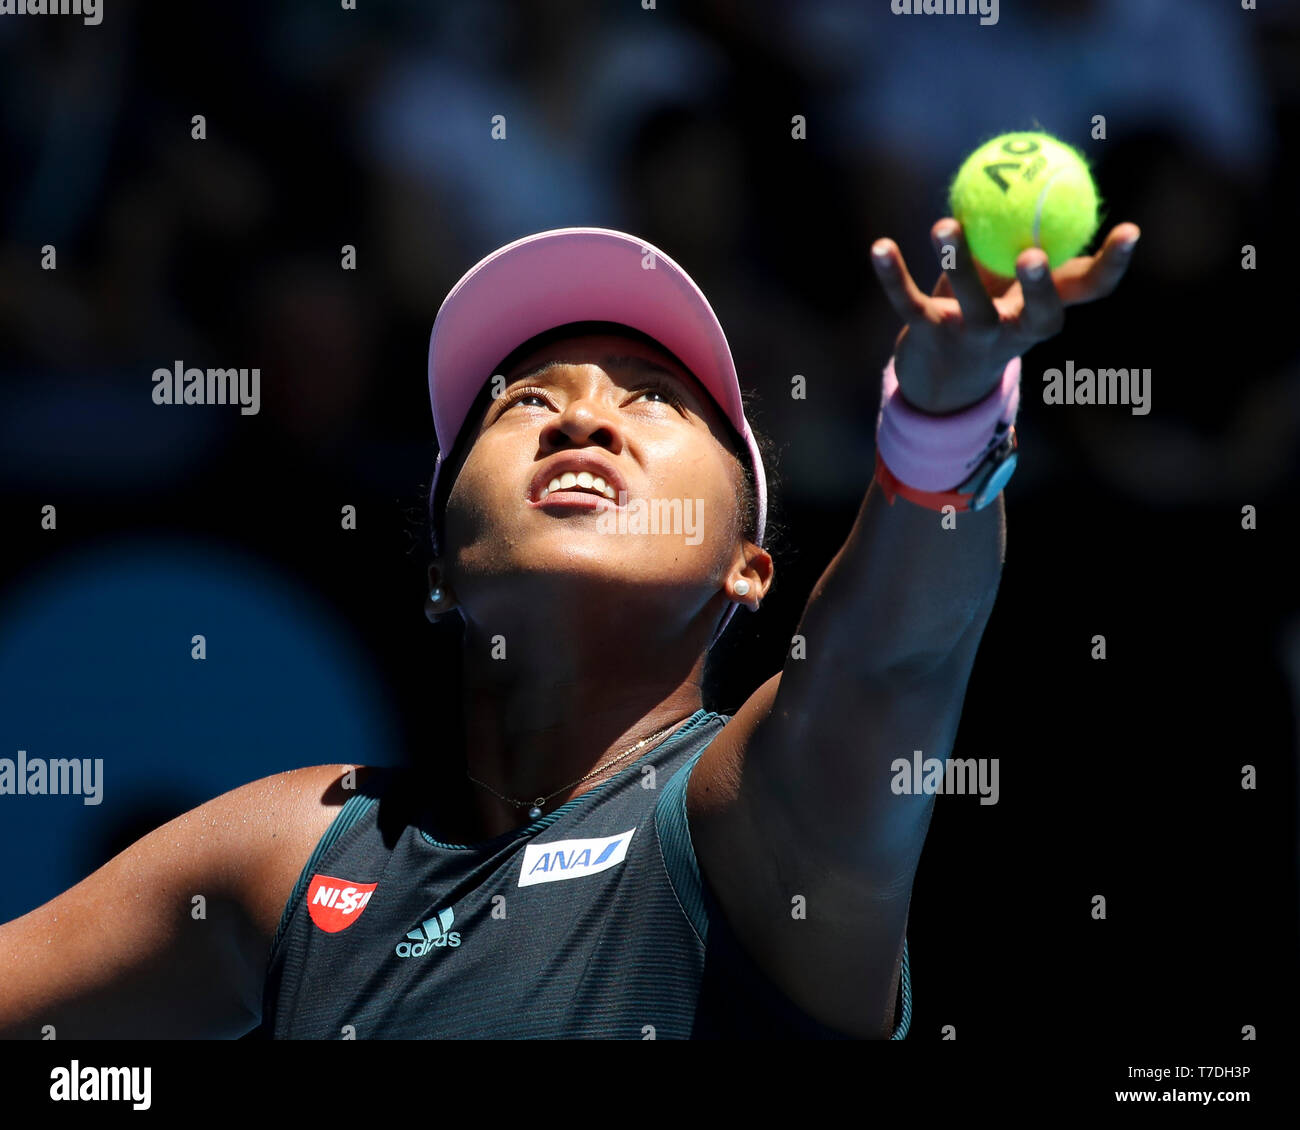 Joueur de tennis Japonais Naomi Osaka jouant pendant le tournoi de tennis Open d'Australie 2019, Melbourne Park, Melbourne, Victoria, Australie Banque D'Images